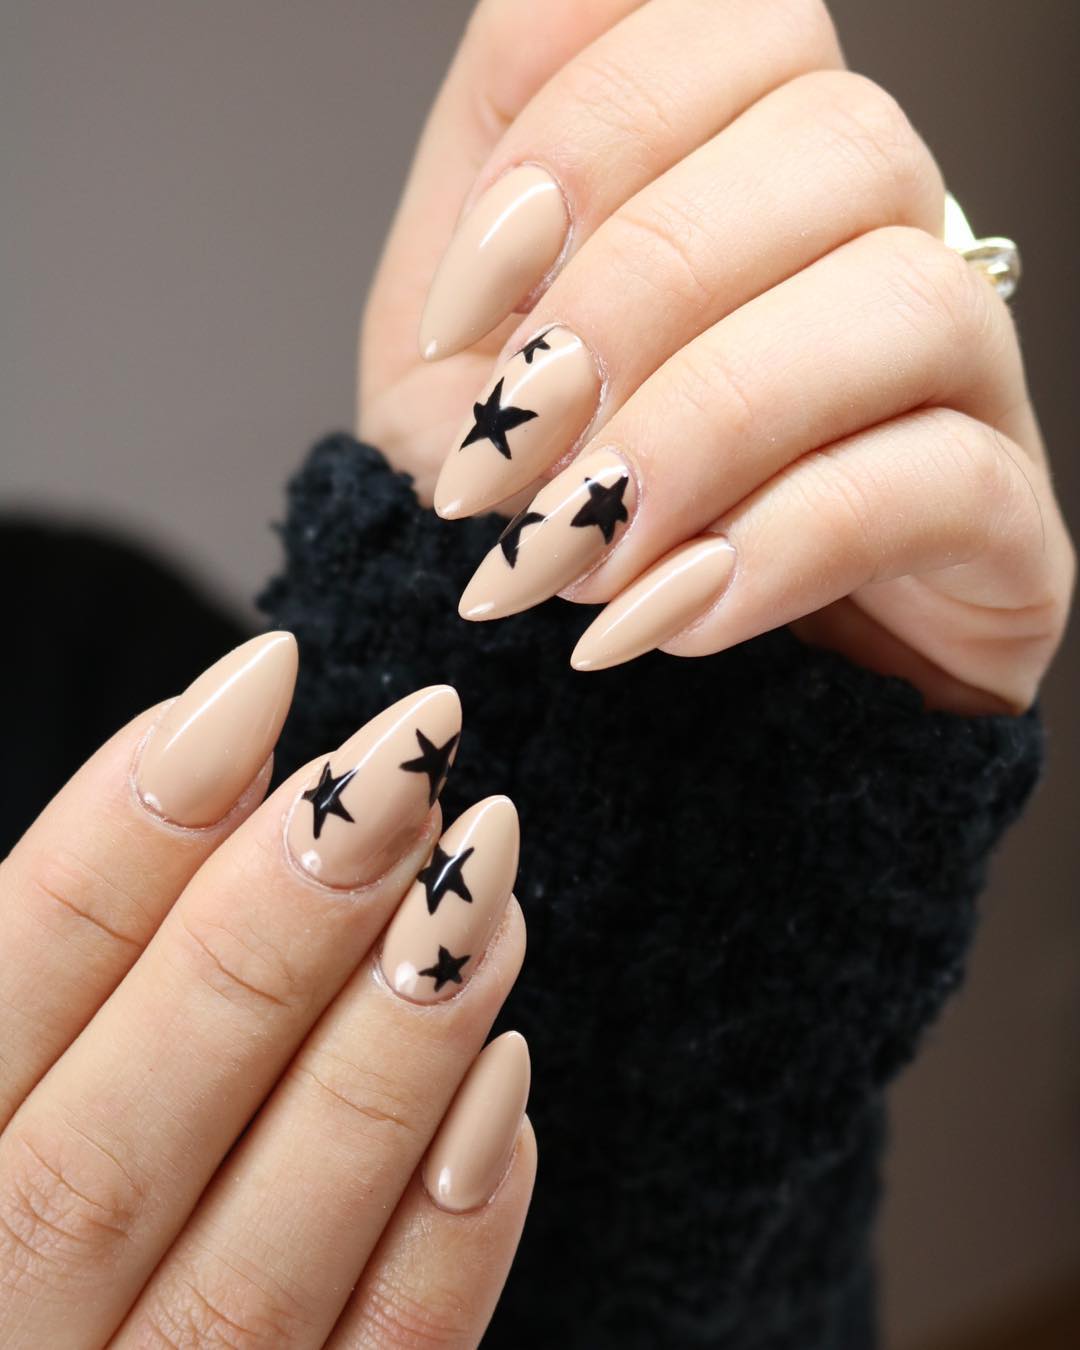 Diseños de uñas con estrellas delicadas